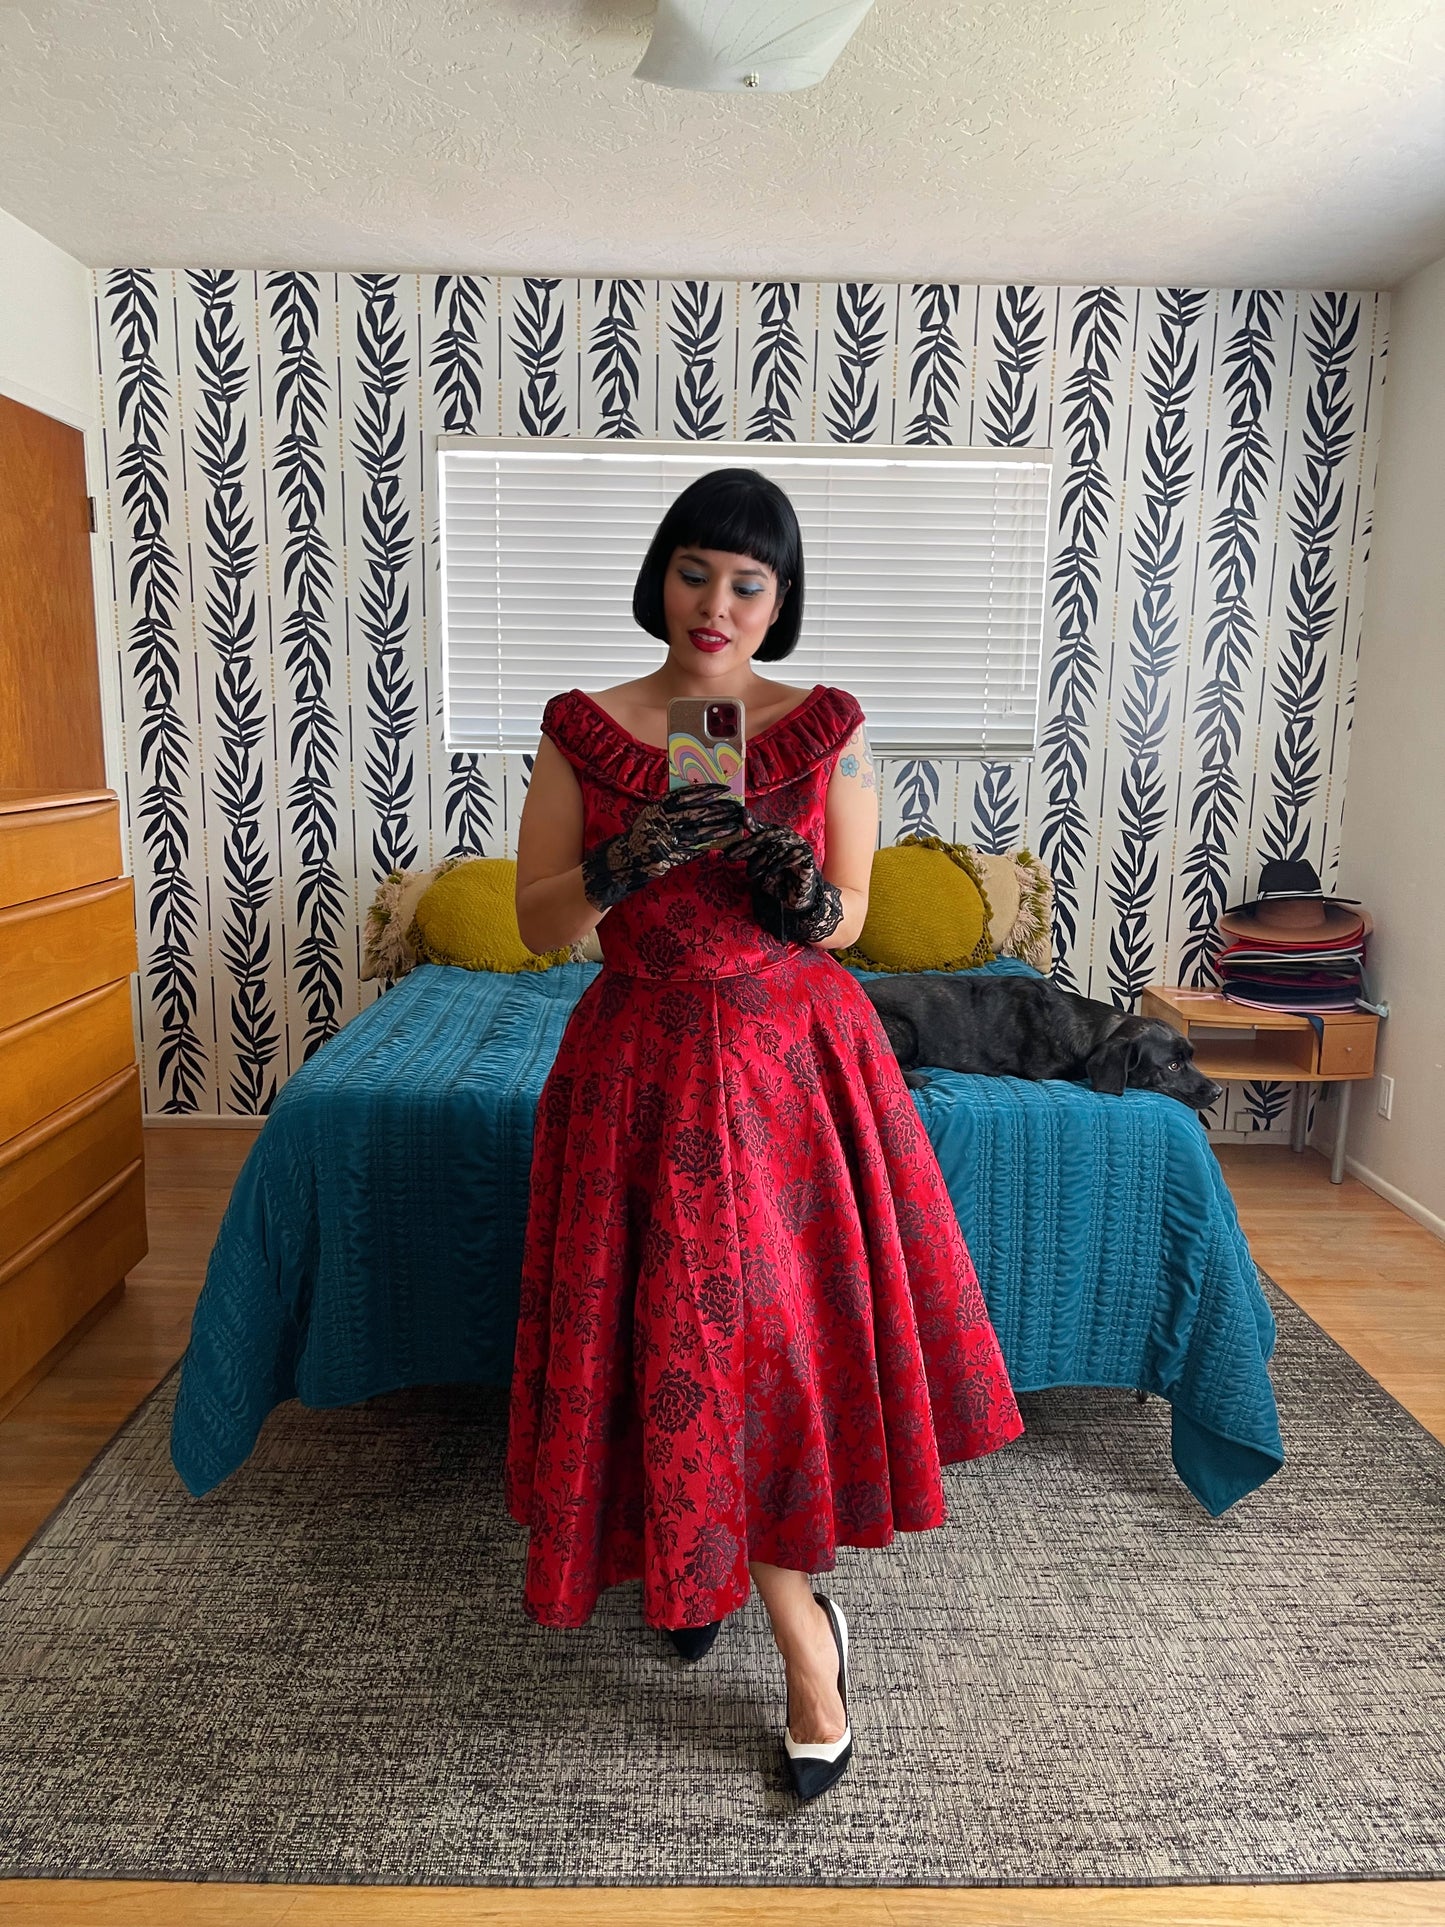 Vintage 50s / 60s Damask Red & Black floral Design A-line Full Skirt Dress fits size S